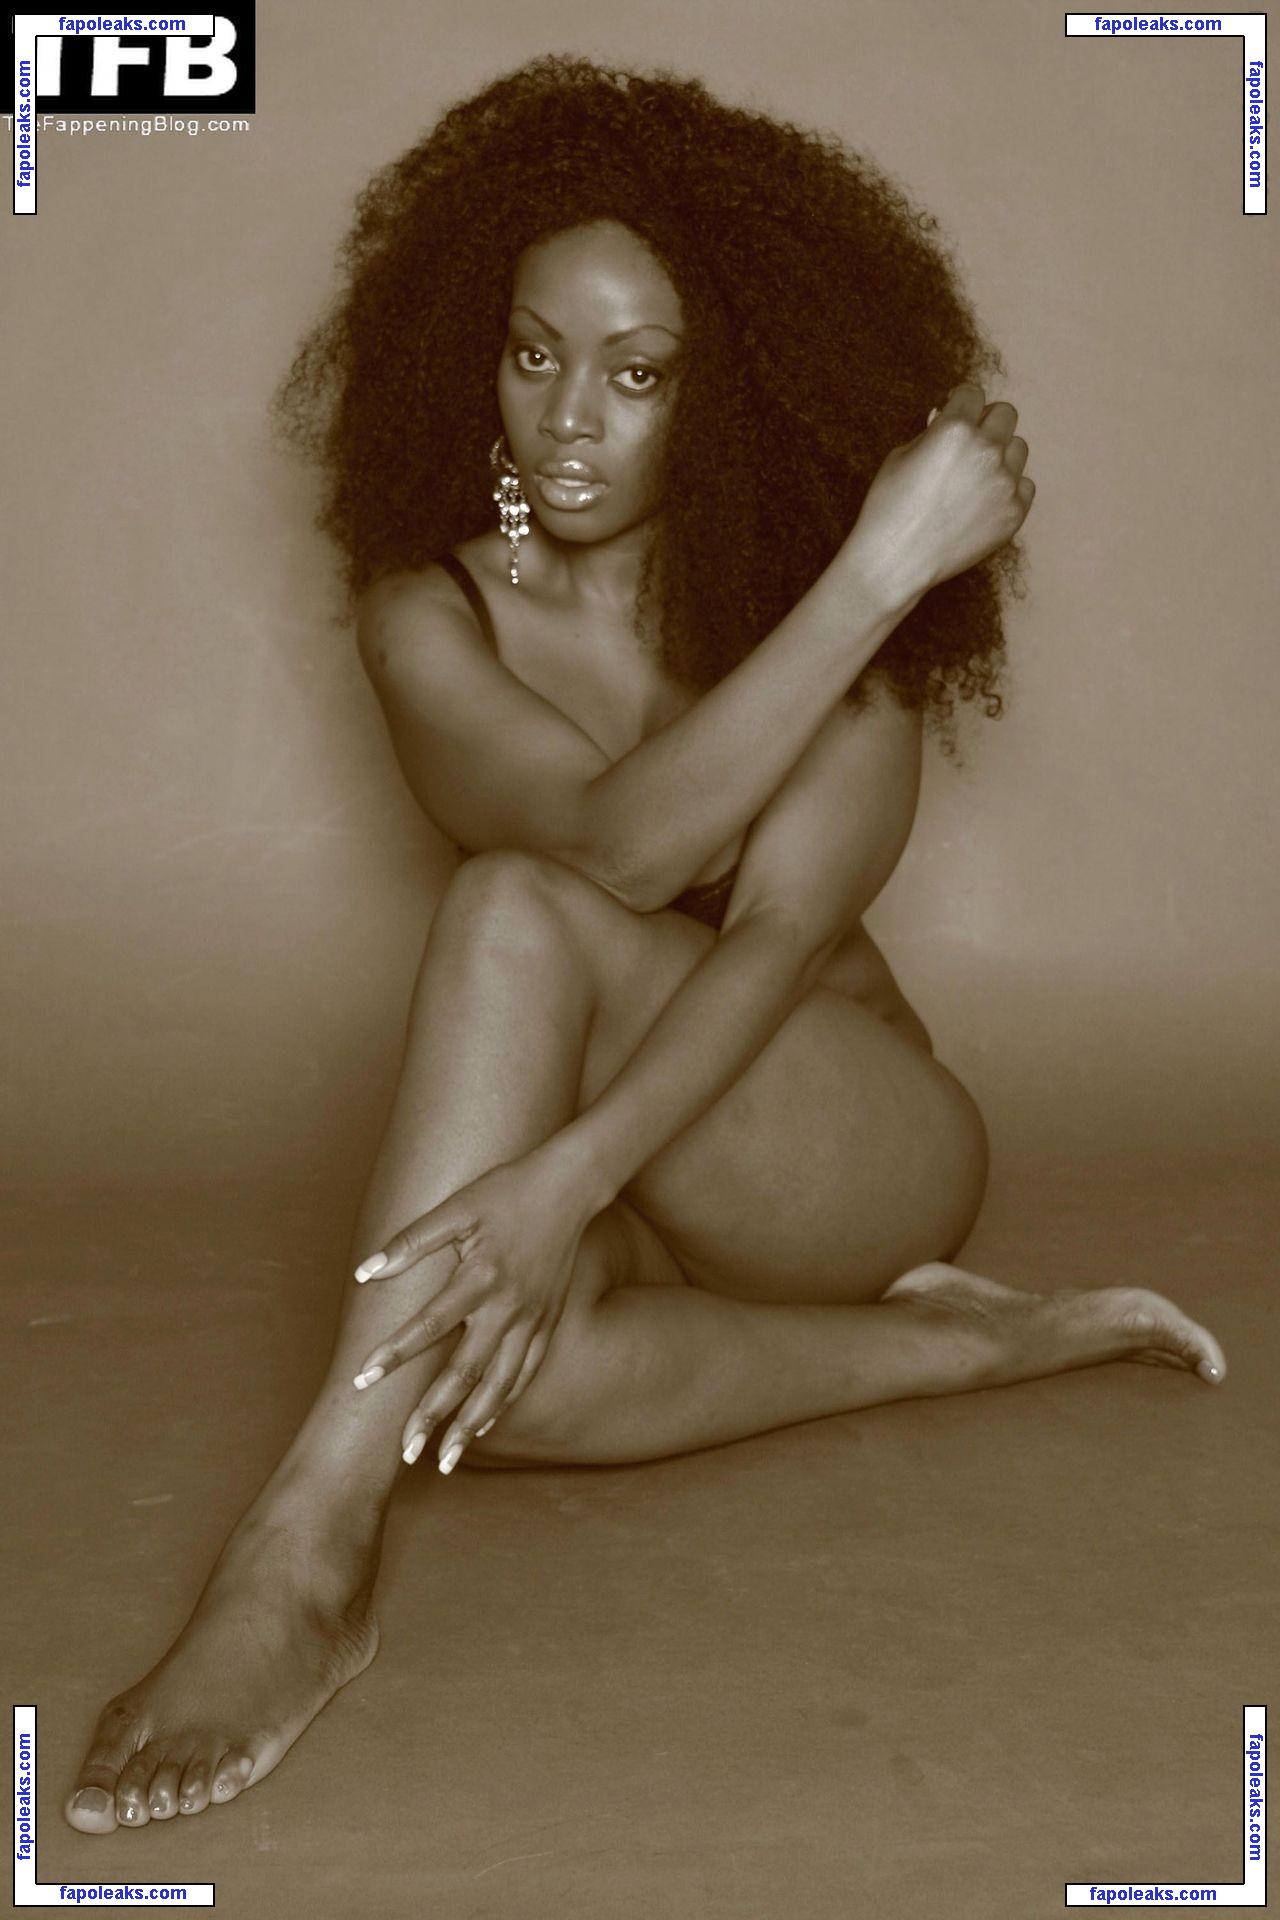 Makosi Musambasi nude photo #0021 from OnlyFans